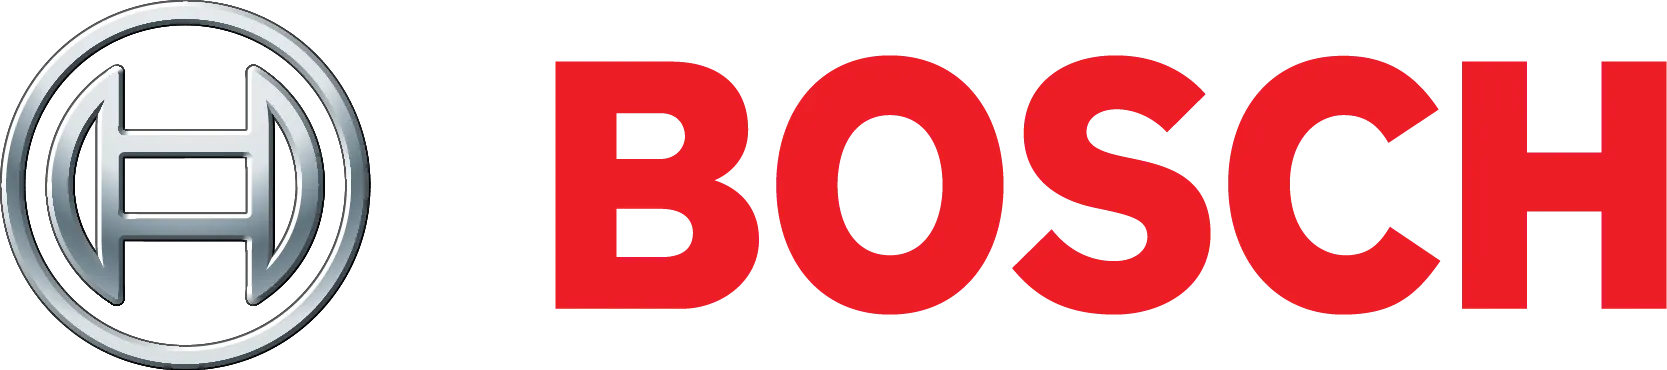 BOSCH_logo